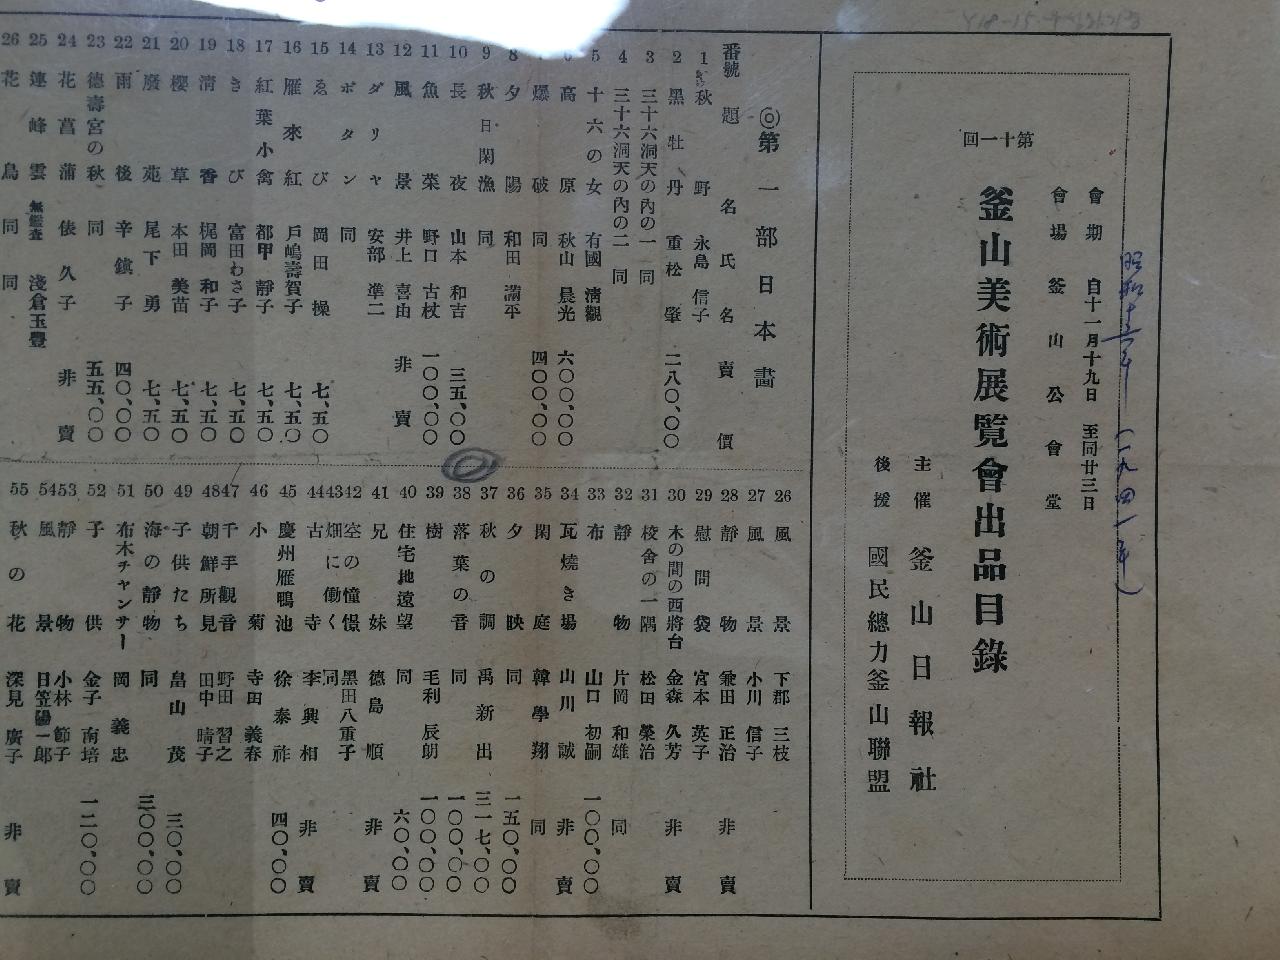 1941년 제11회 부산미술전람회 수상내역